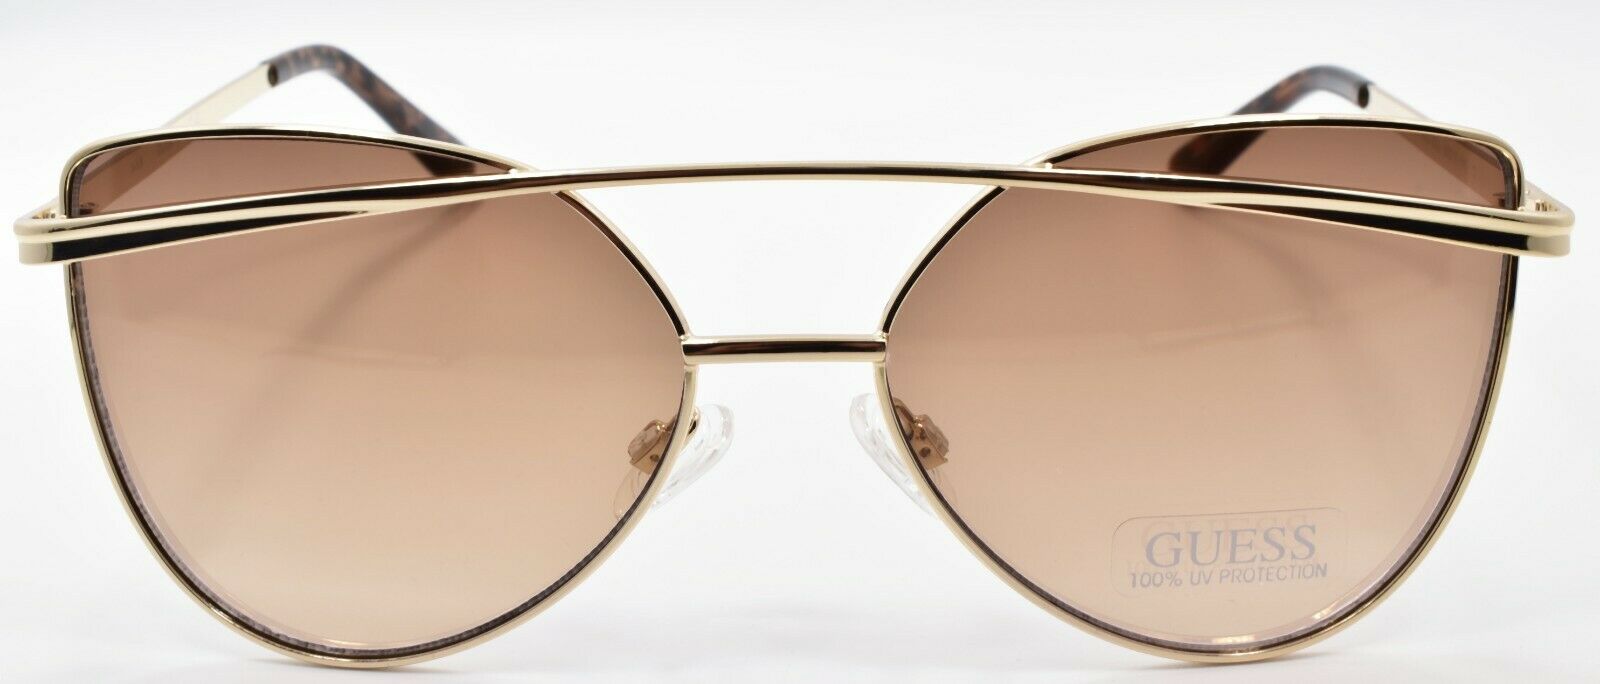 2-GUESS GF0332 32G Women's Sunglasses Cat Eye 56-16-140 Gold / Mirrored-664689979165-IKSpecs